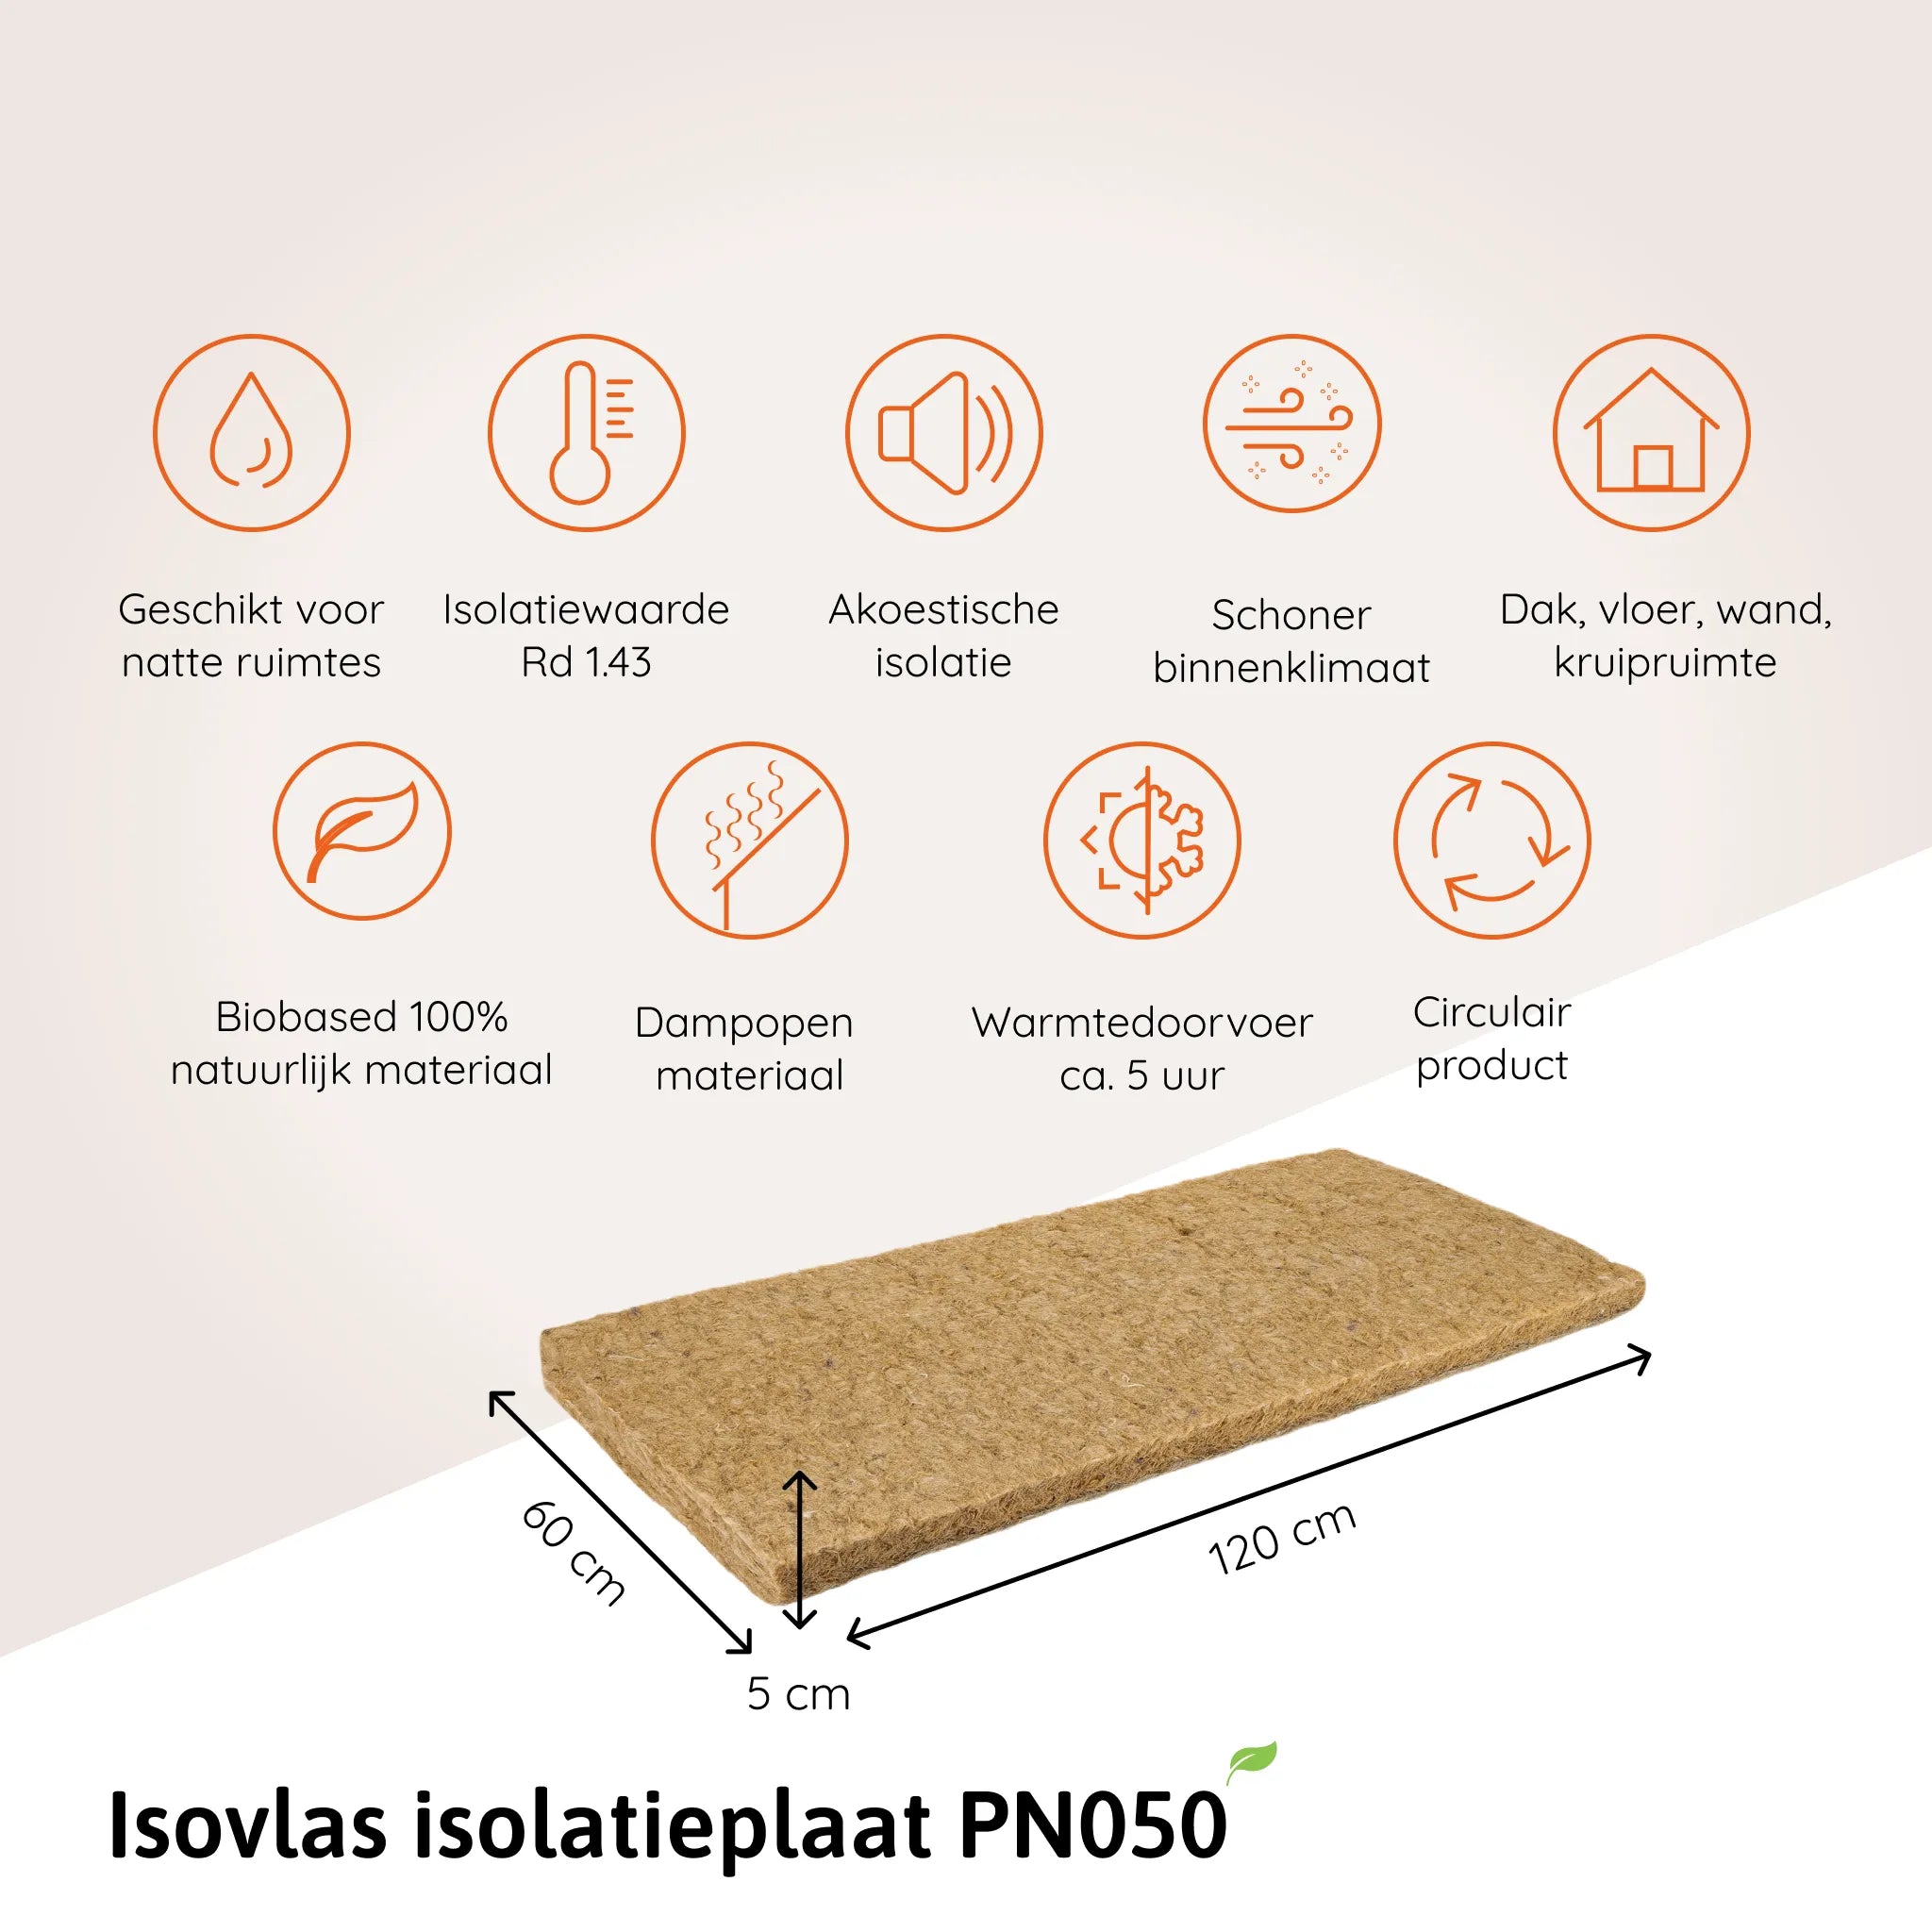 Isovlas isolatieplaat PN050